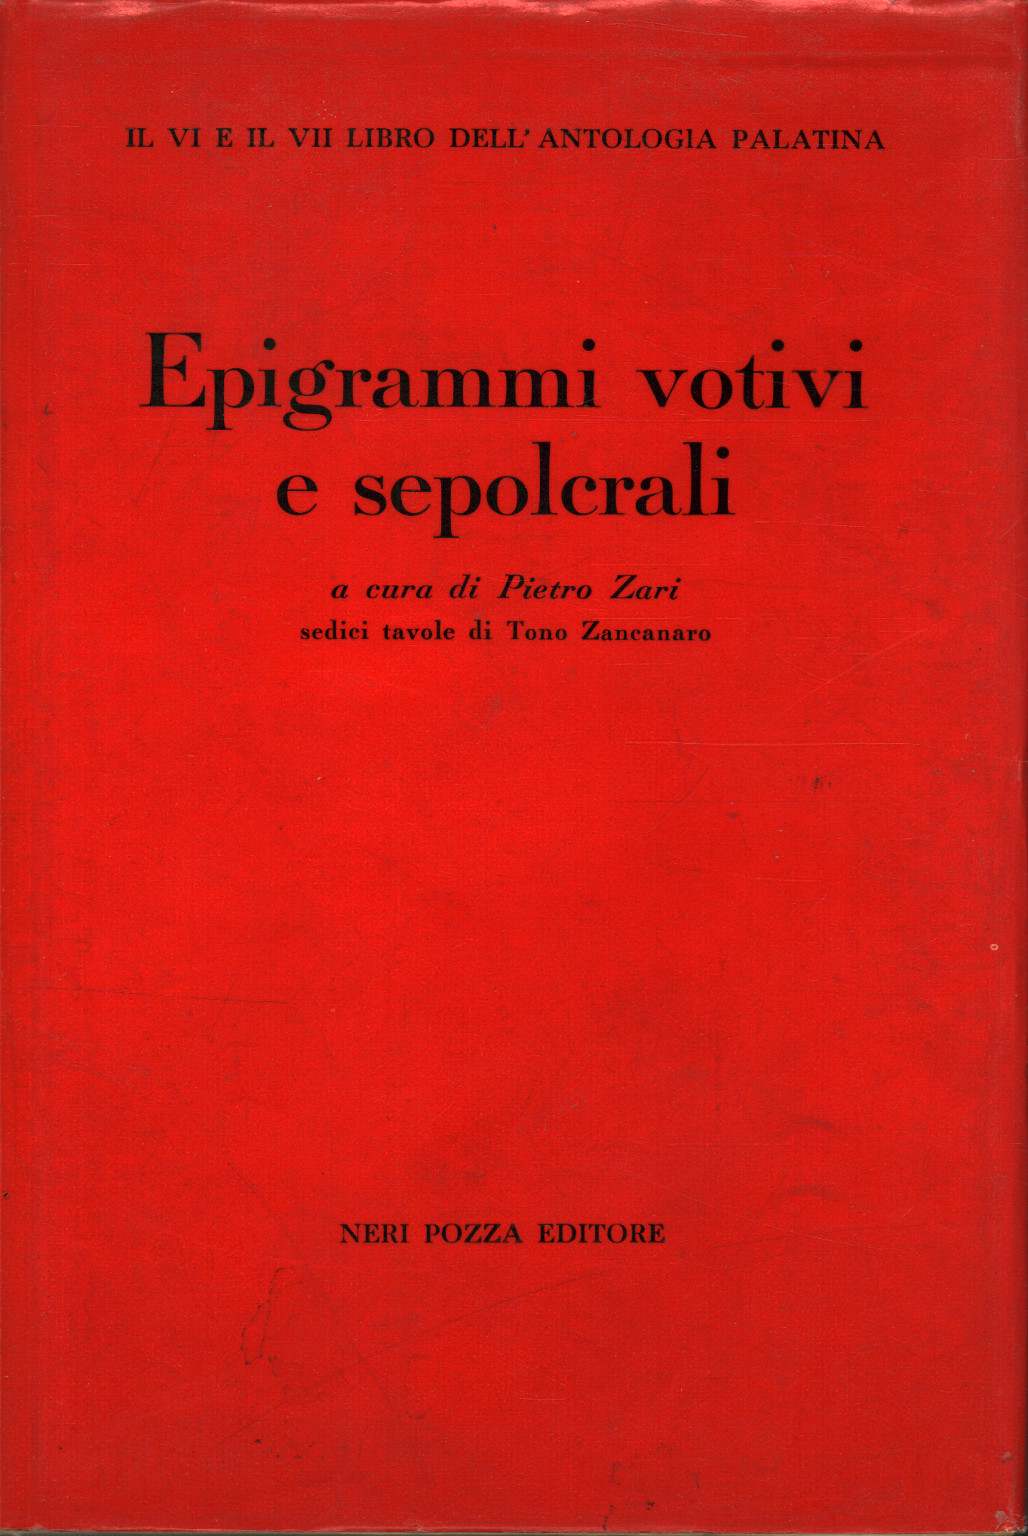 Epigrammi votivi e sepolcrali, s.a.